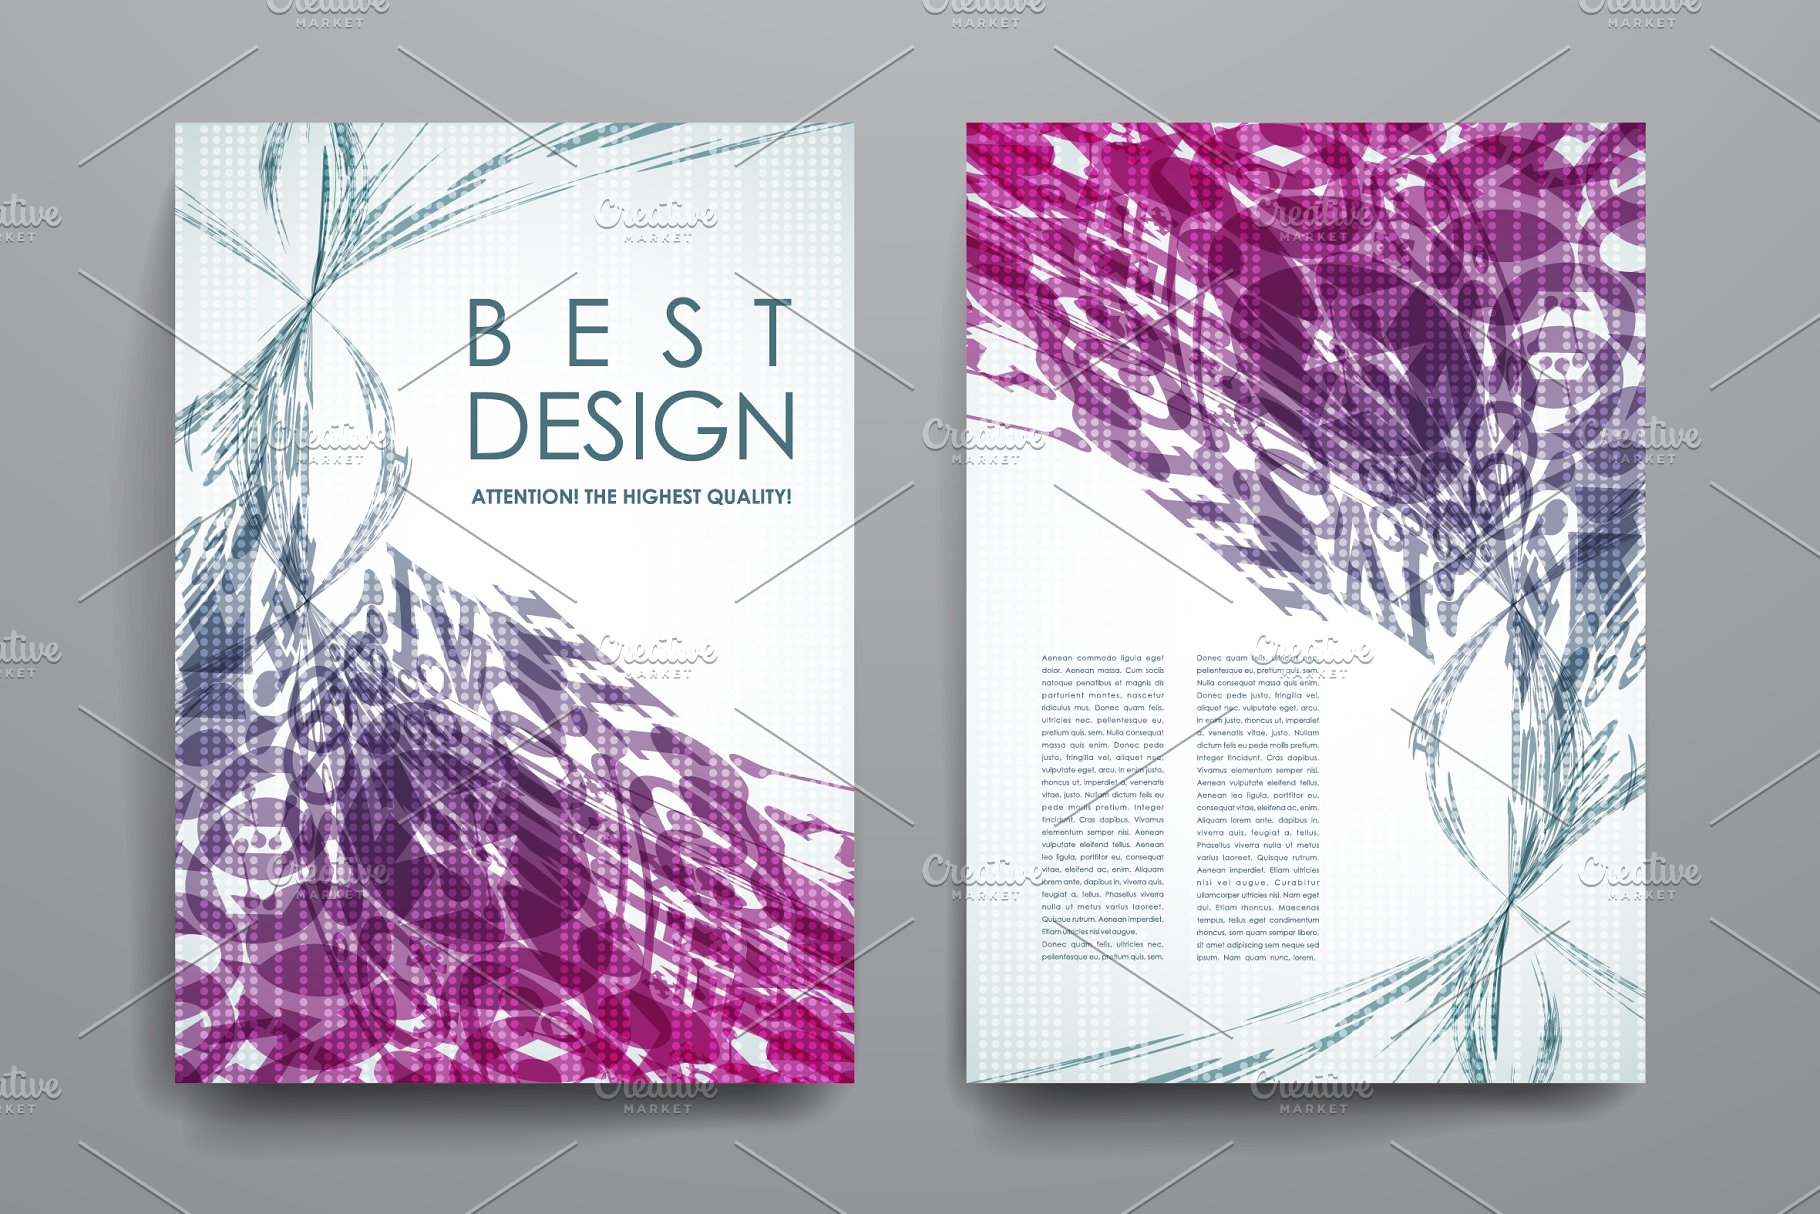 漂亮飘逸线条抽象画册模板 Brochures Templates插图(1)